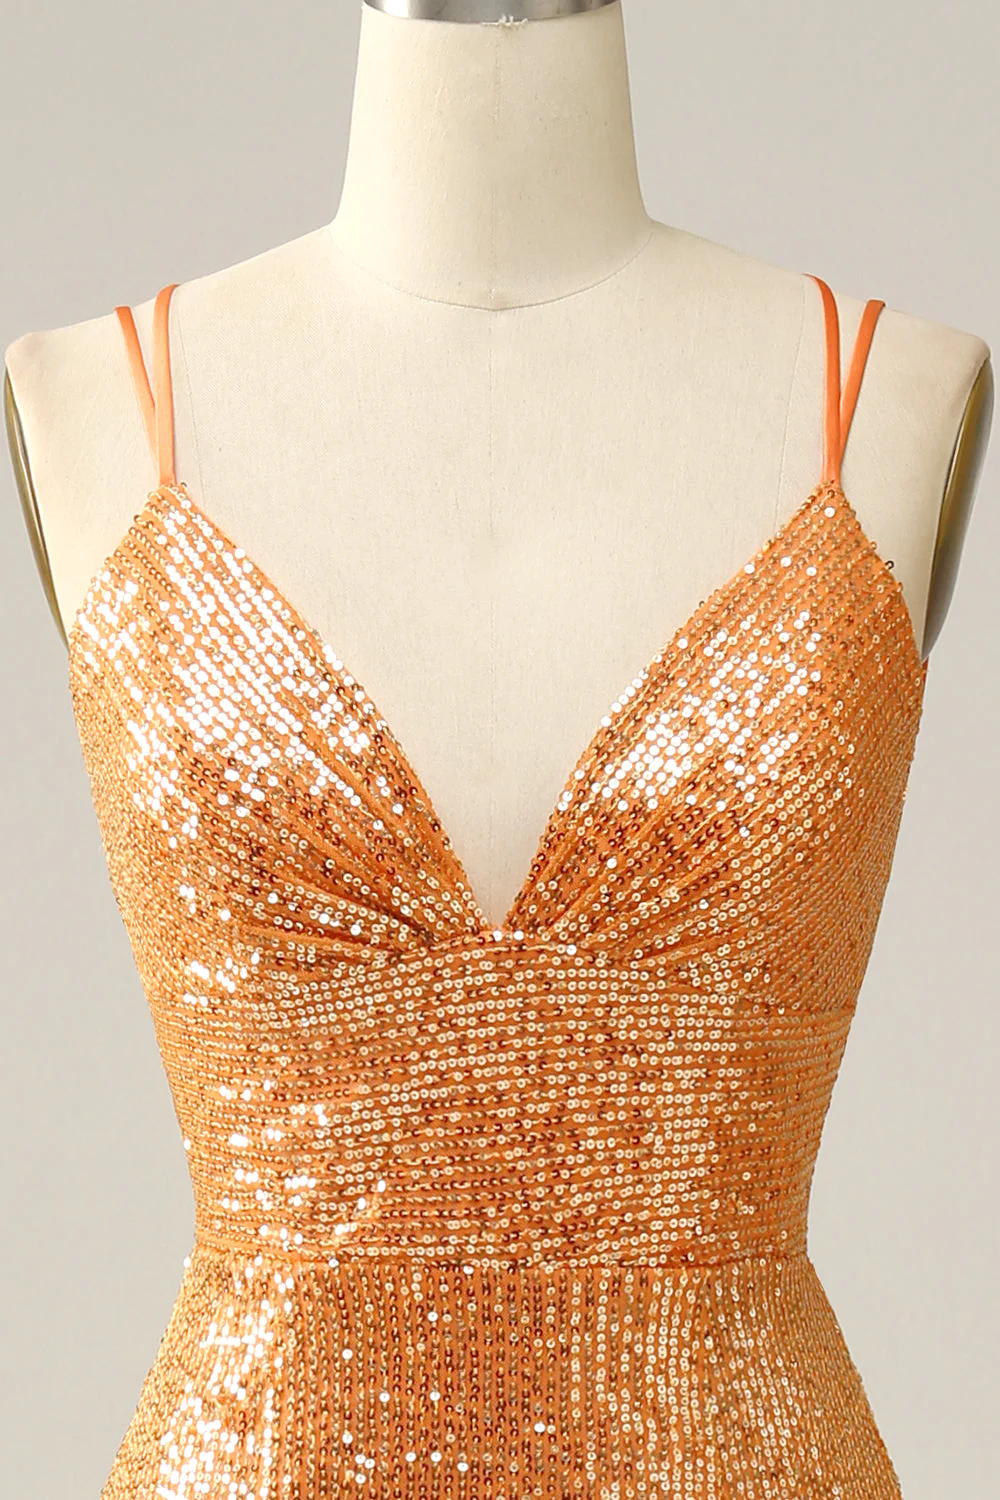 Orange Sequined Backless Mermaid Prom Dress Y2974